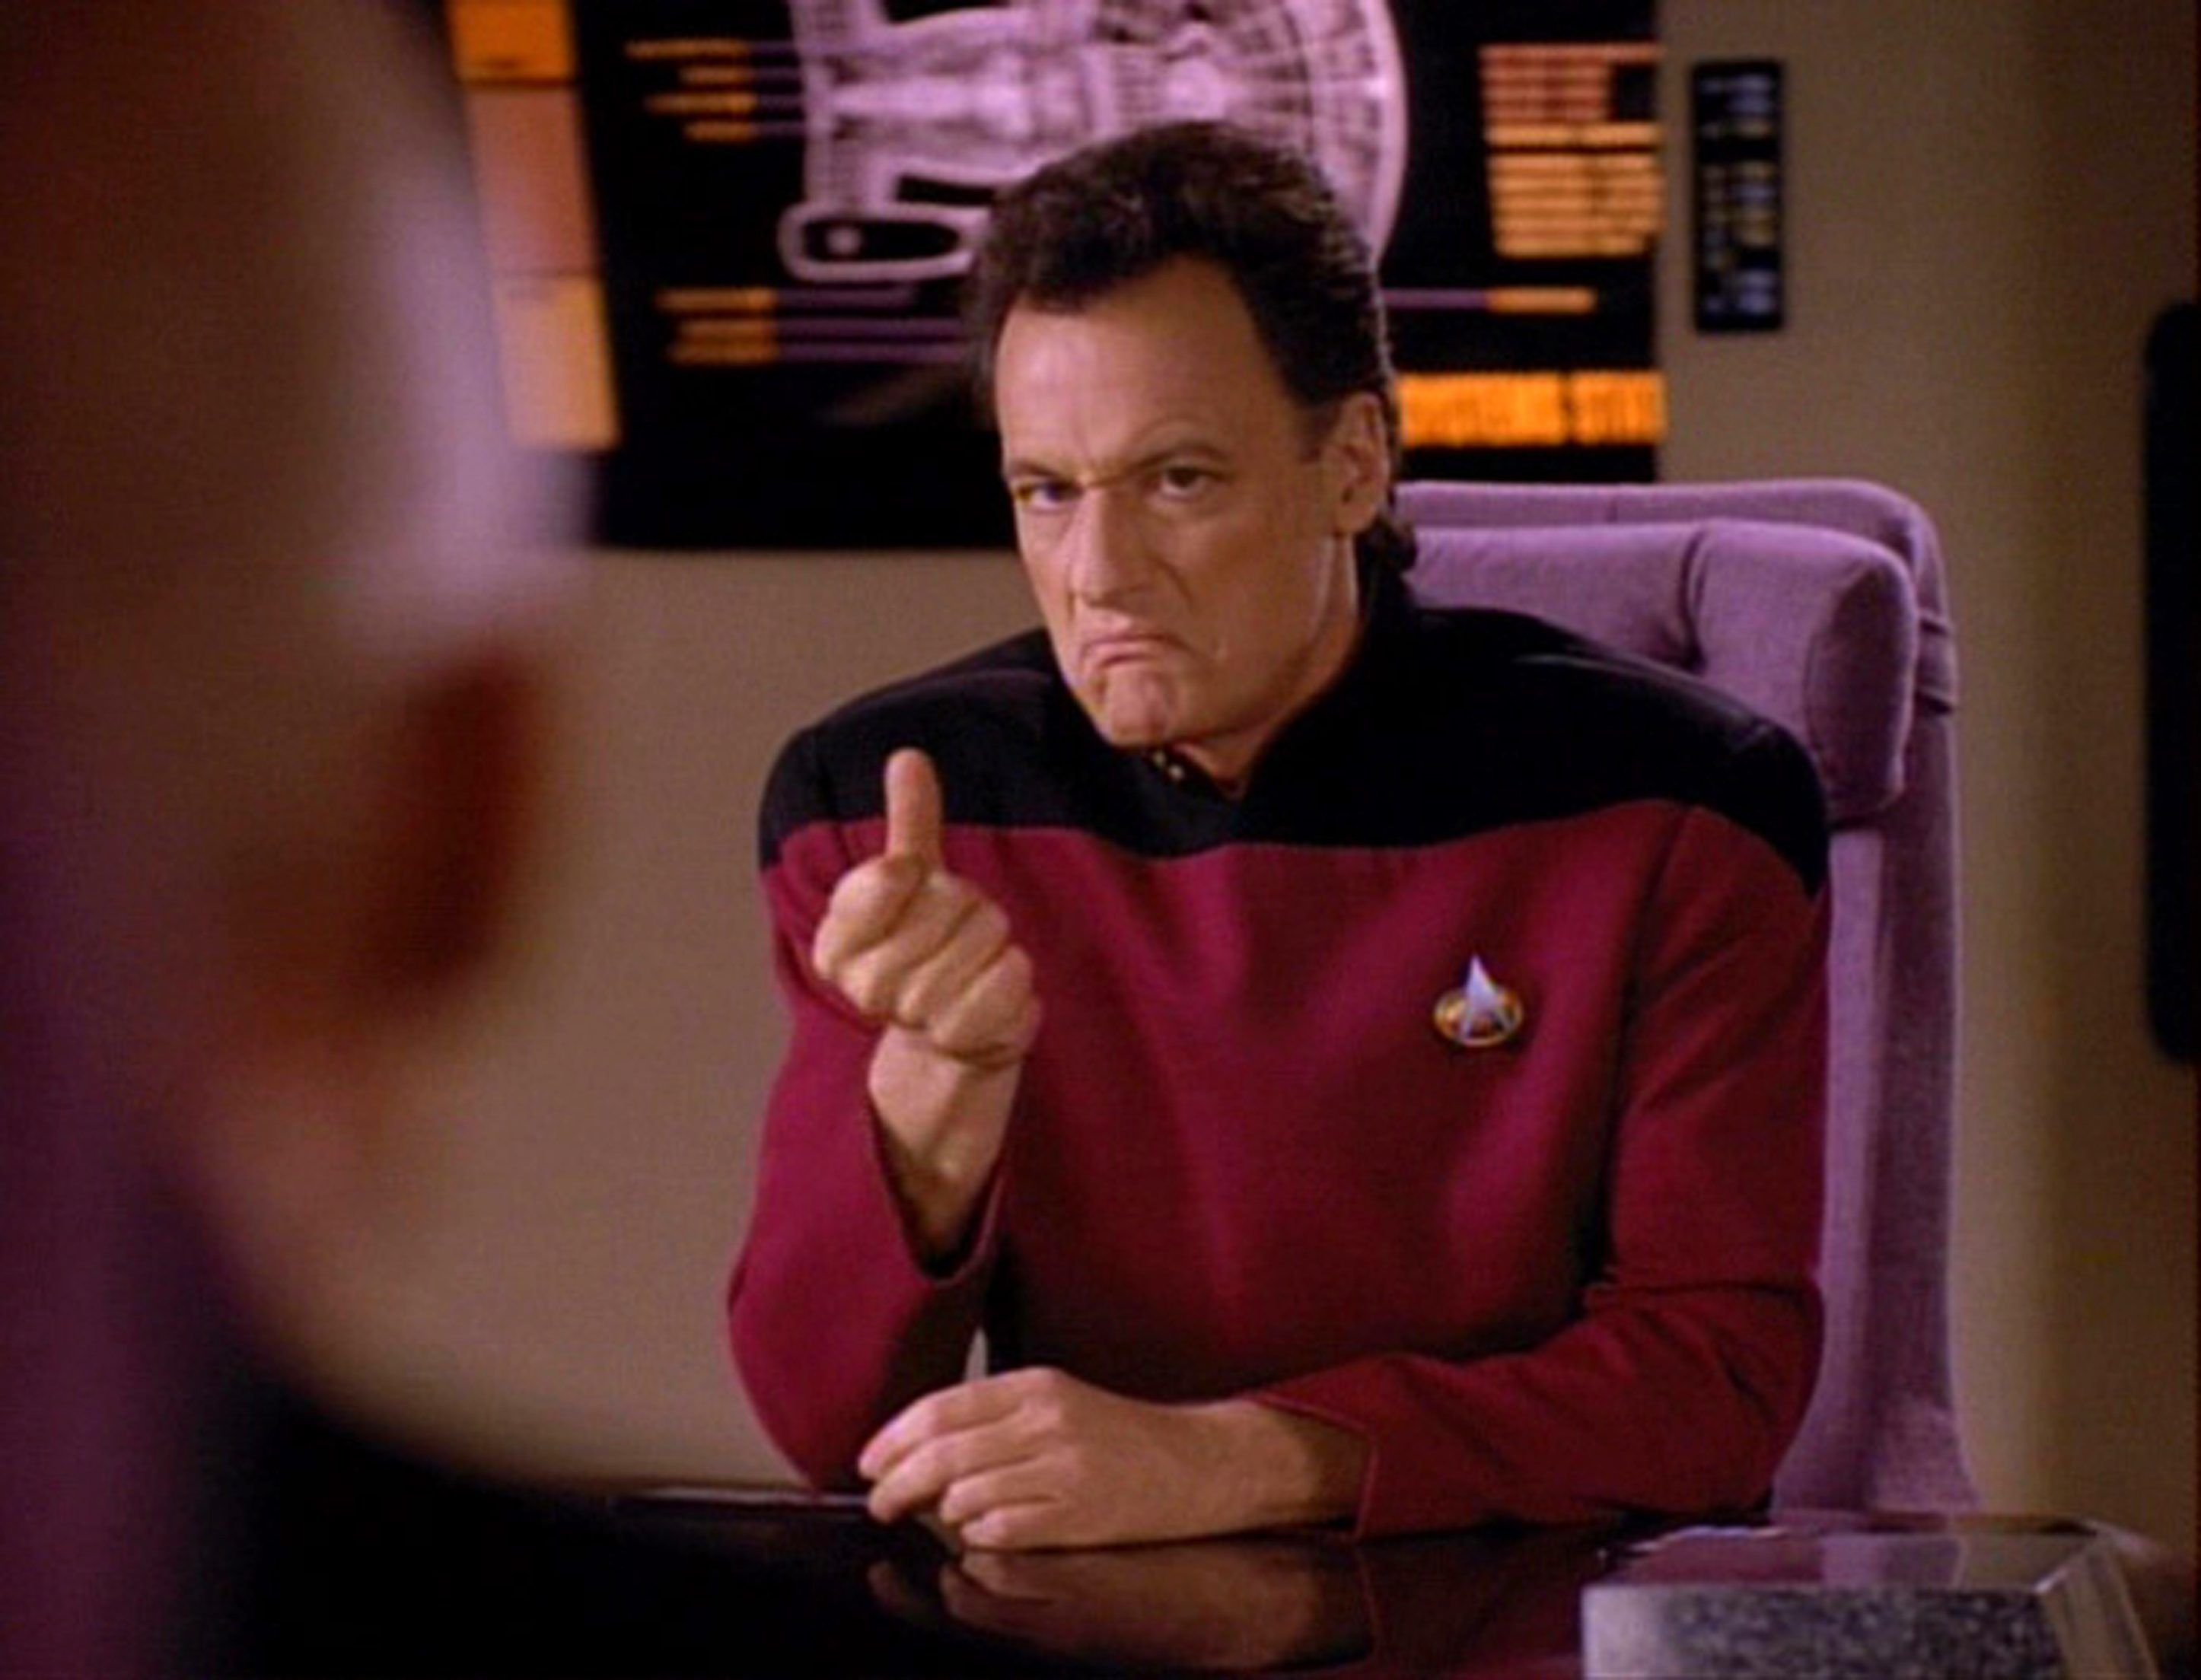 Star Trek's John de Lancie kehrt als Q für einen Lower Decks-Cameo zurück